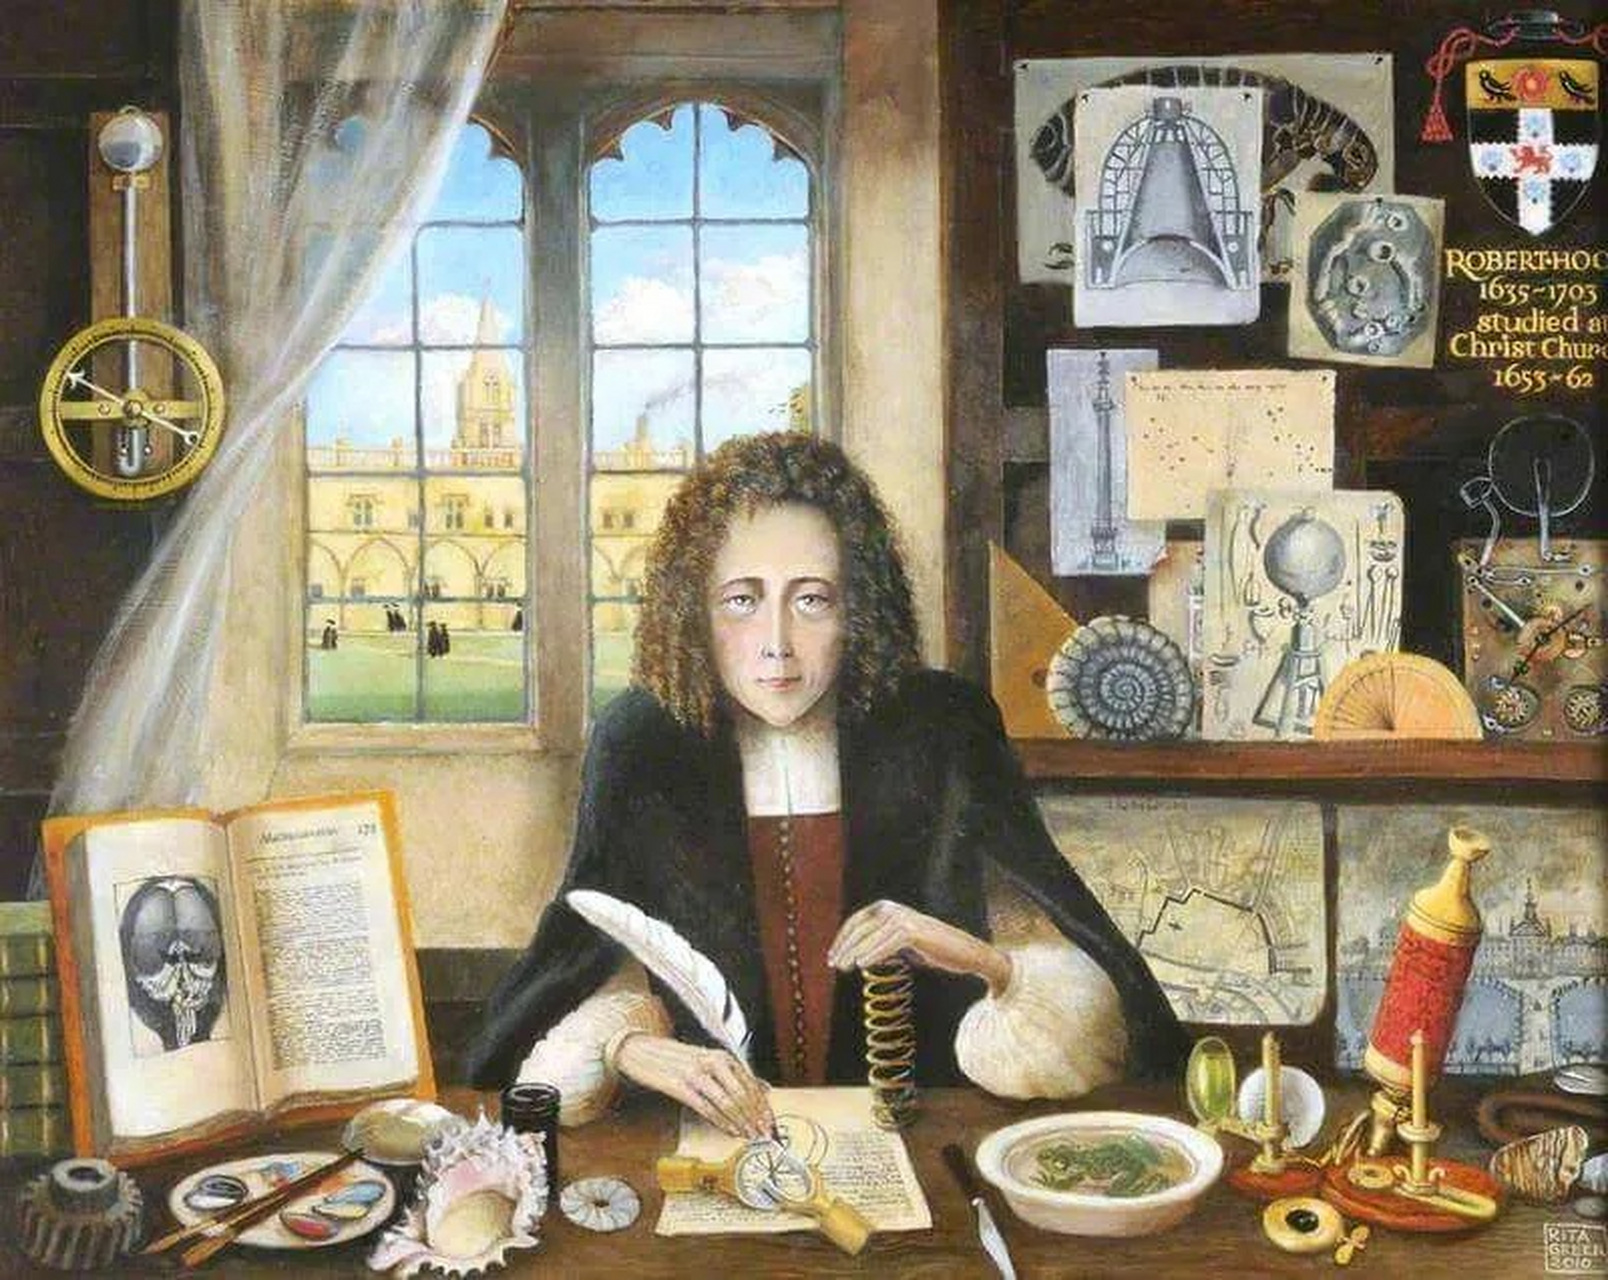 1665年,物理天才胡克出版了那本划时代的巨著《显微术》,利用显微镜